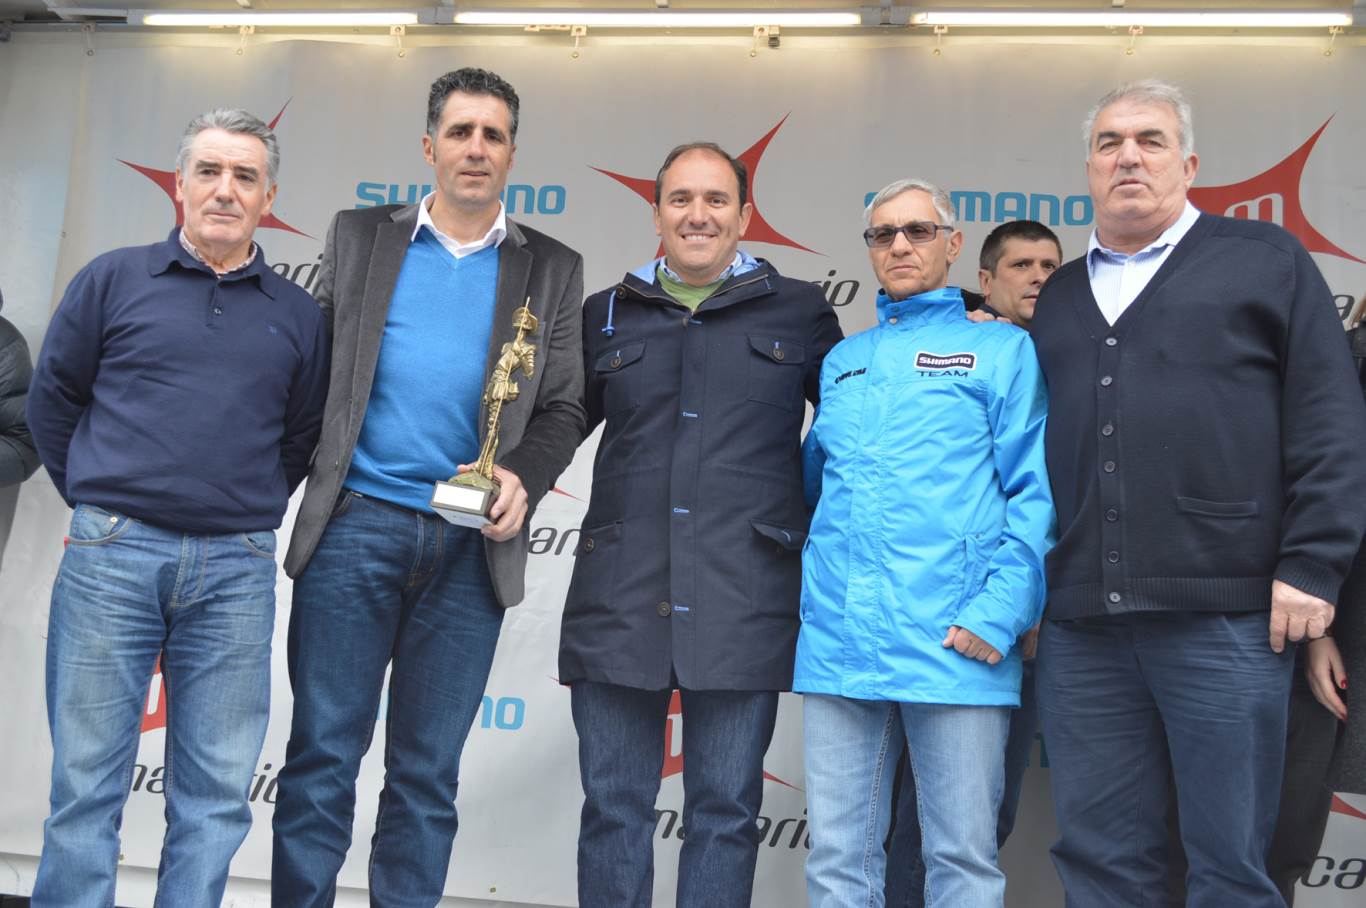 Miguel Indurain estuvo en Alcalá para asistir al Gran Premio Macario